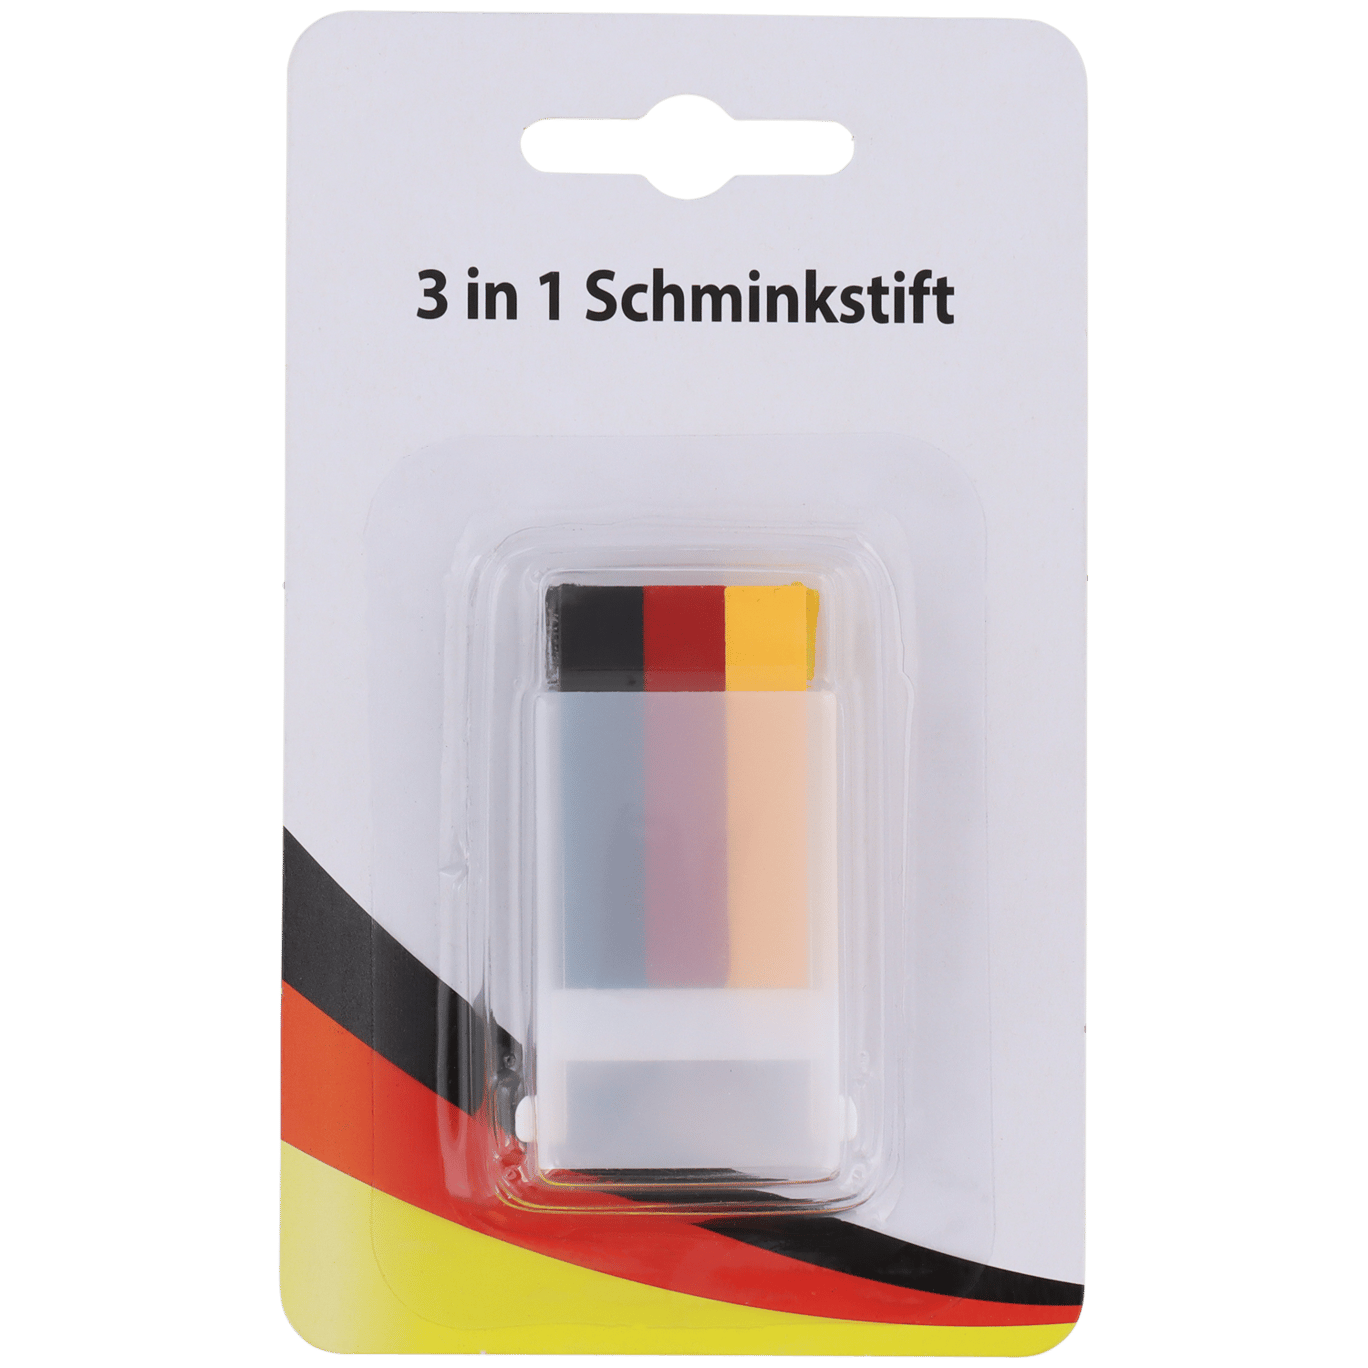 Schminkstift Deutschland